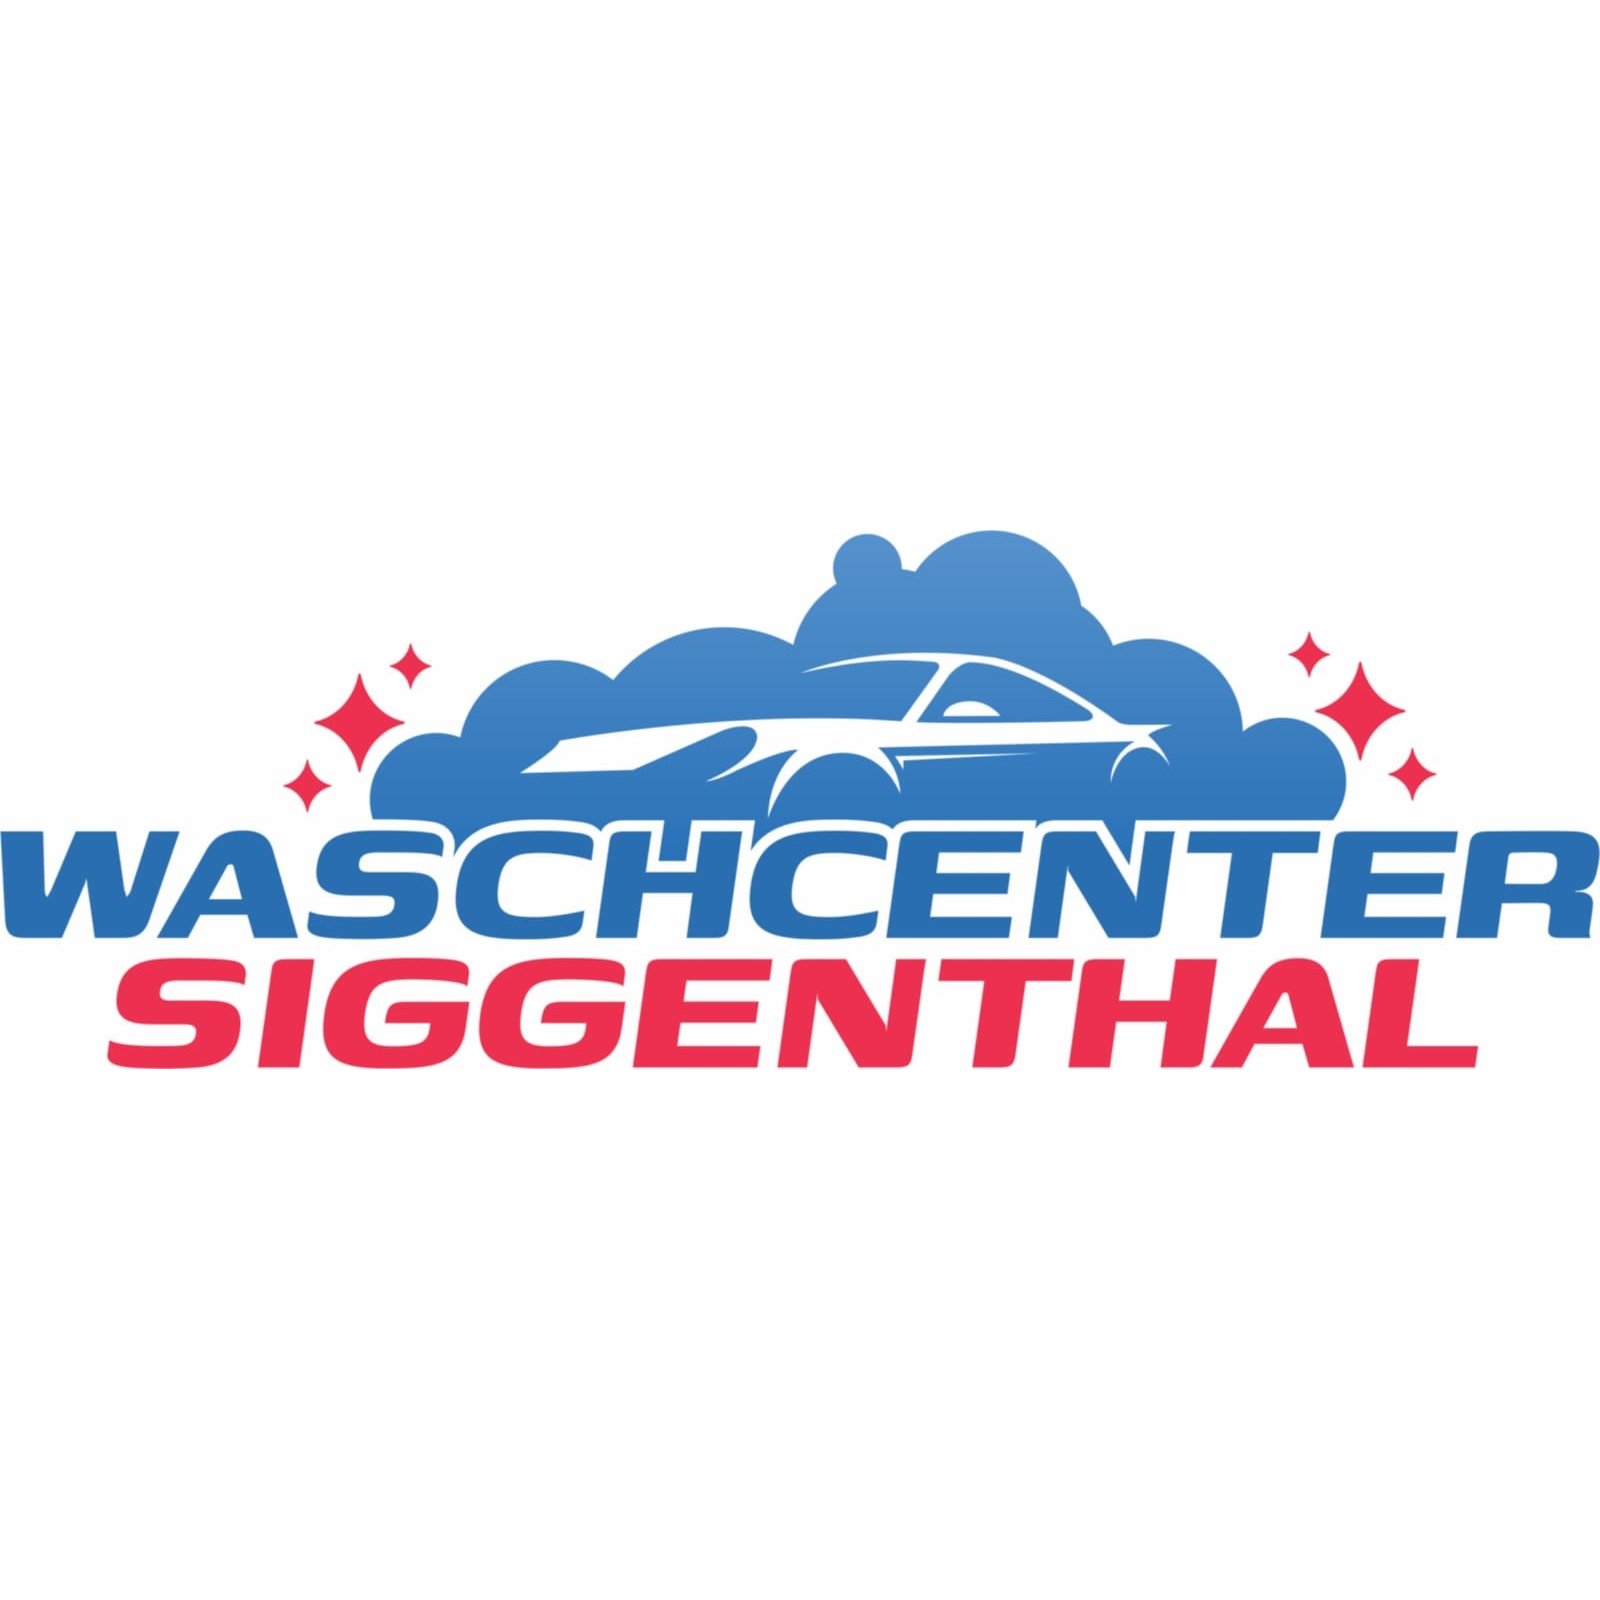 Waschcenter Siggenthal Logo